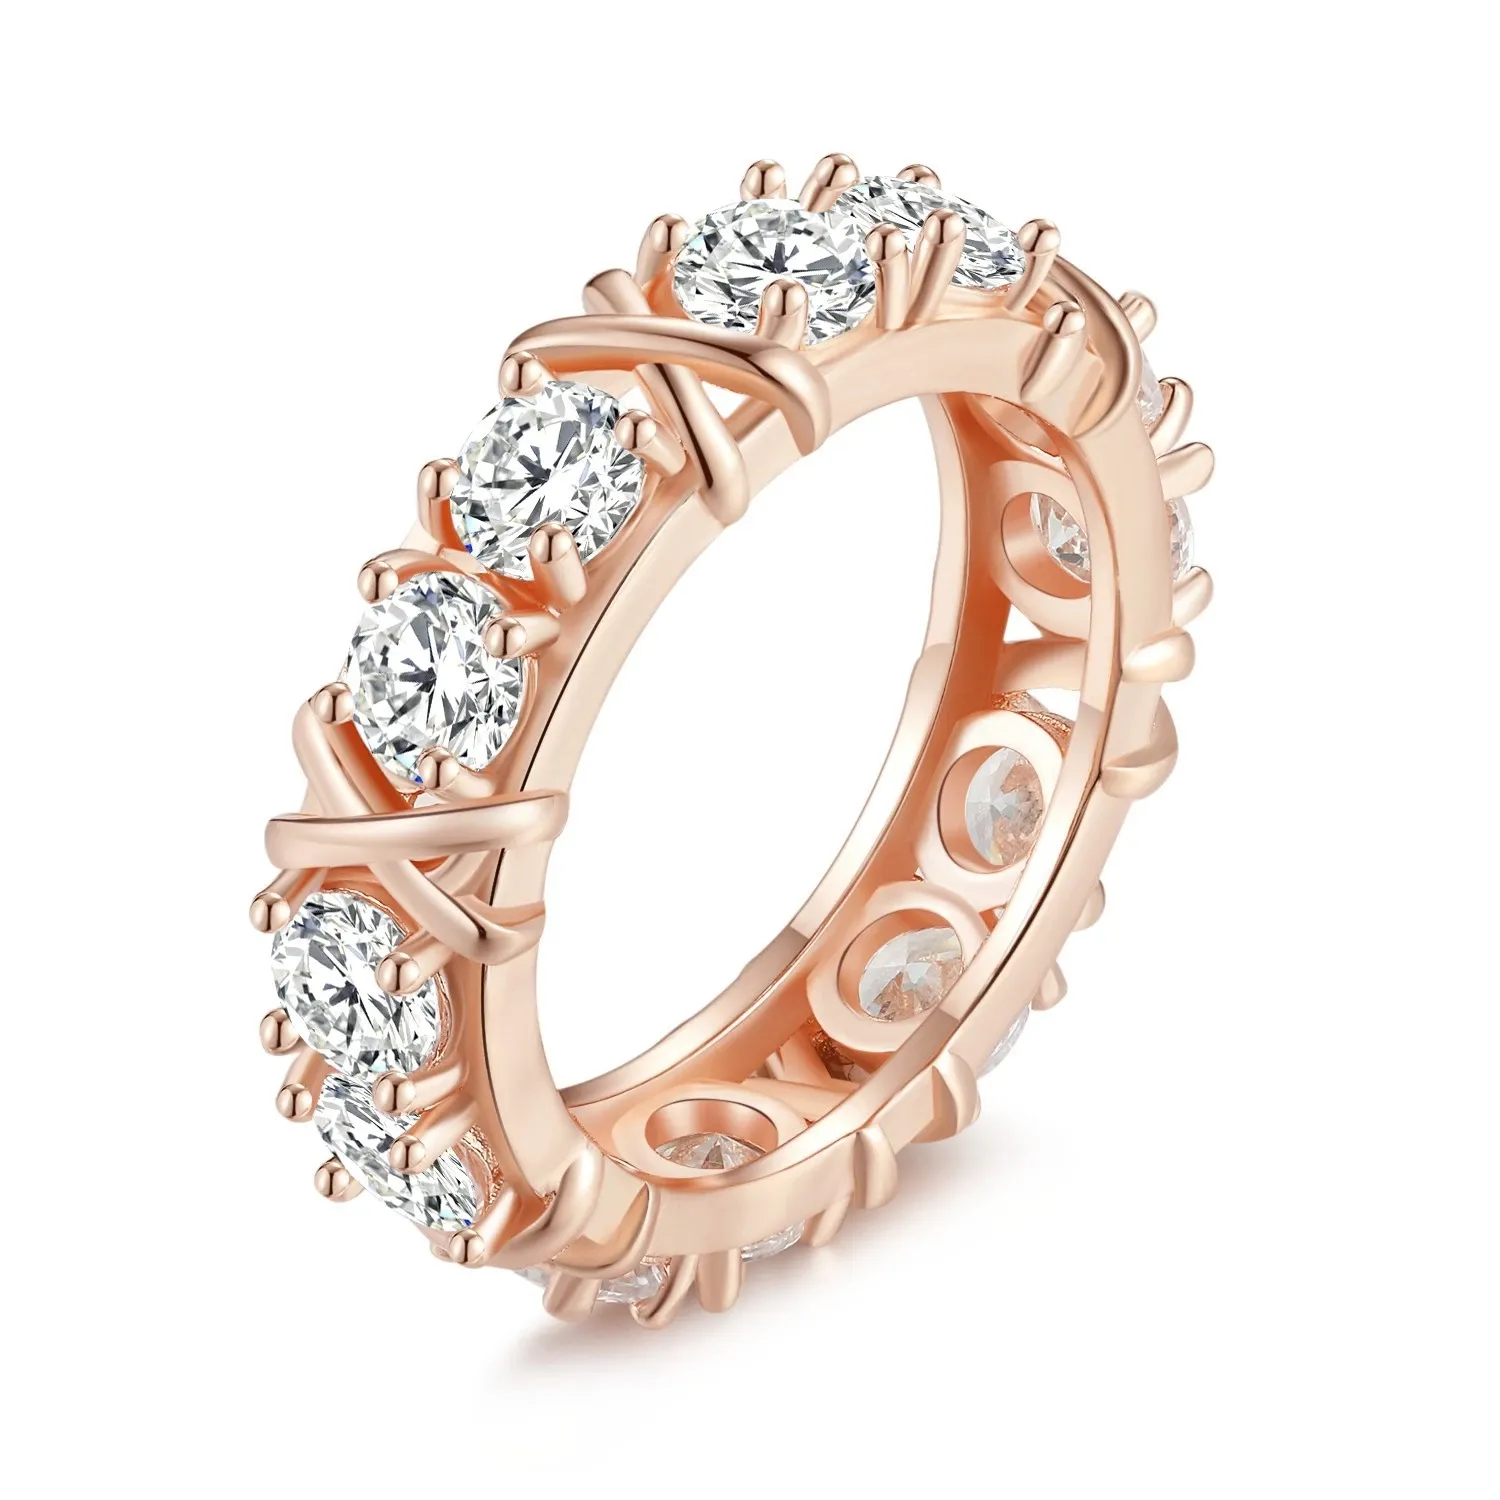 Корейский стиль моды S925 стерлинговые серебристые розовое золото крест бриллиант пары кольцо свет роскошные ниши изысканные украшения подарок